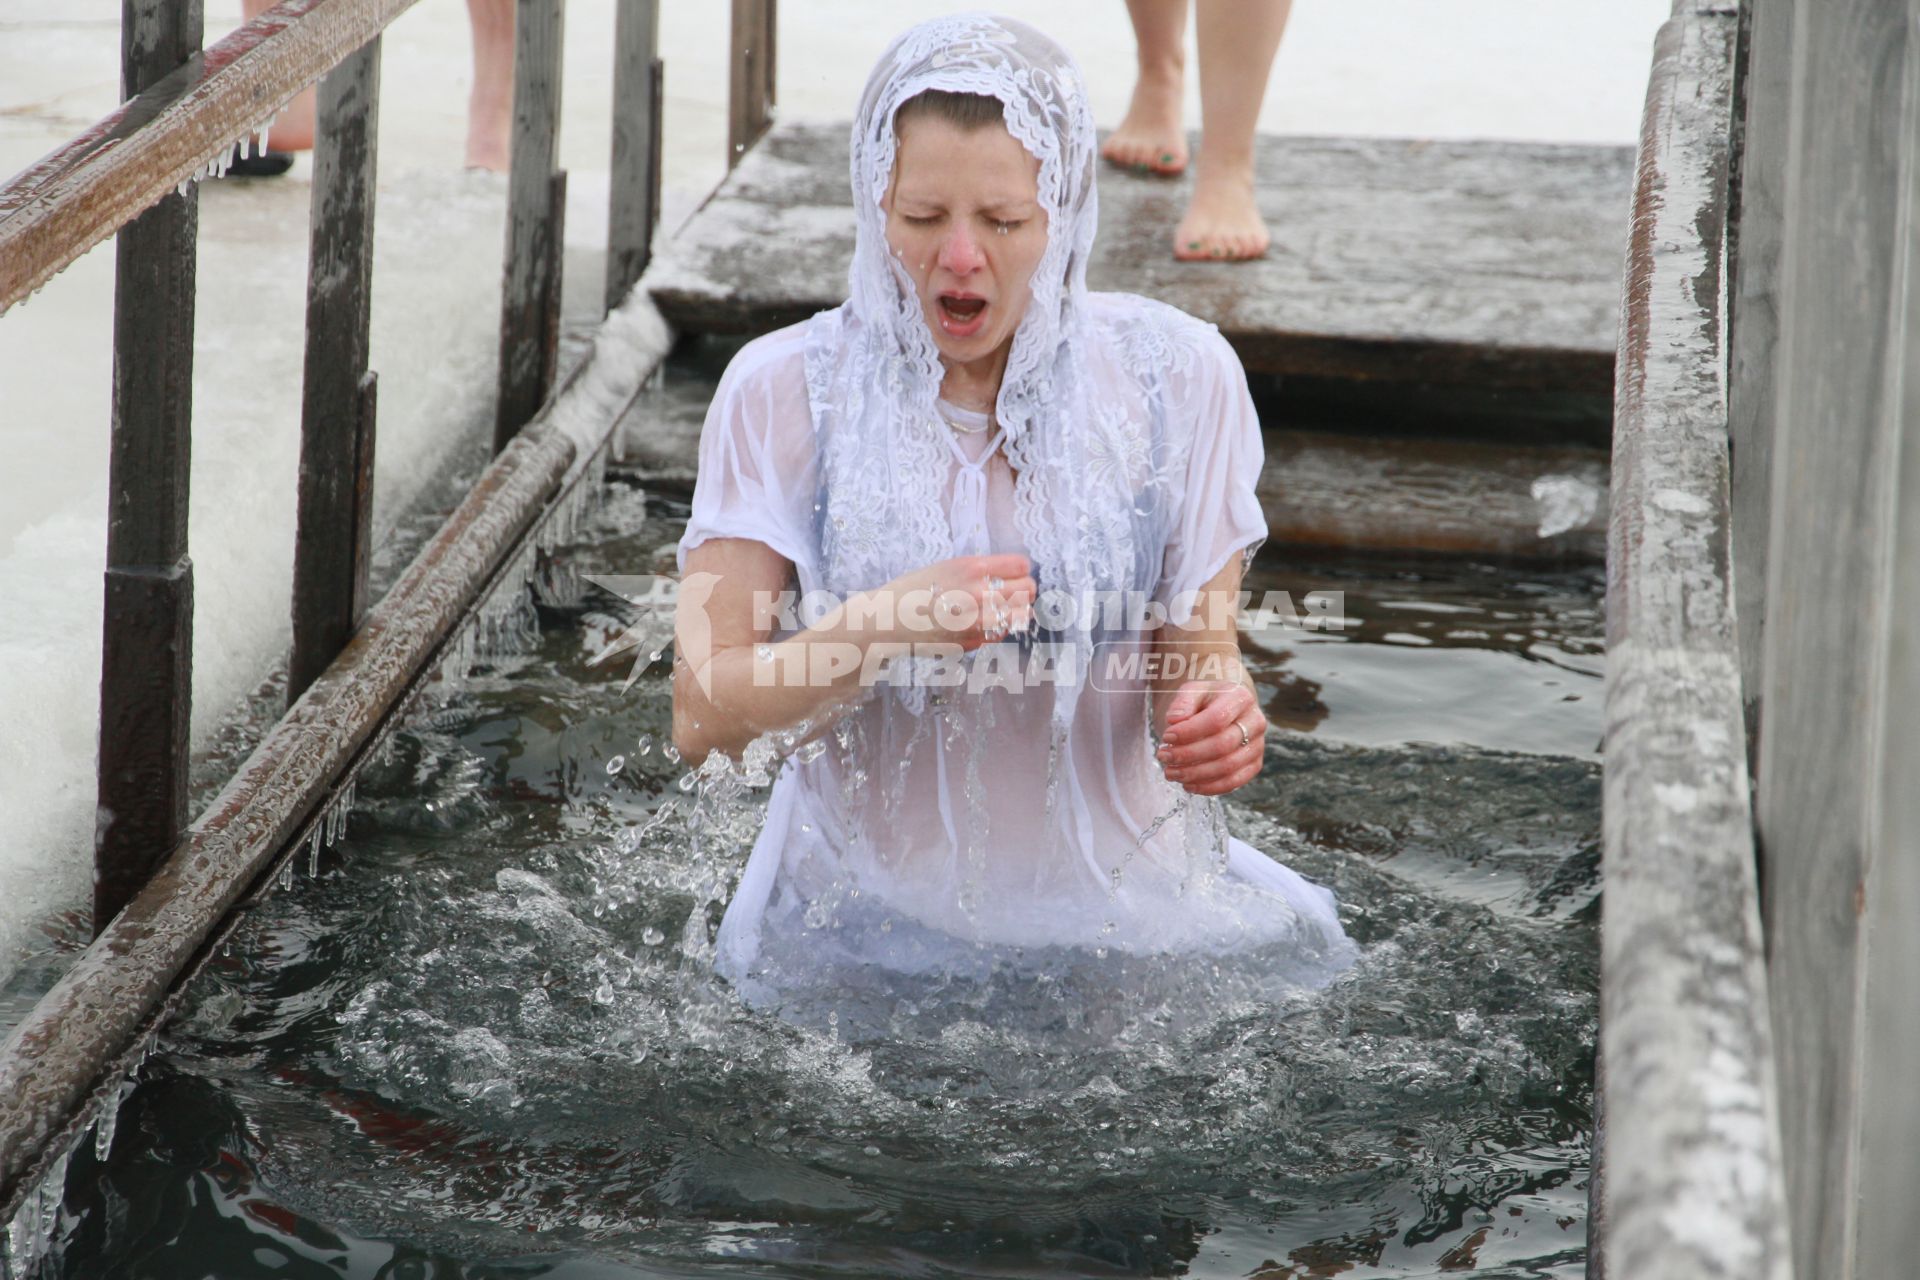 Крещенские купания в Барнауле. На снимке: девушка окунается в купели на реке Обь.